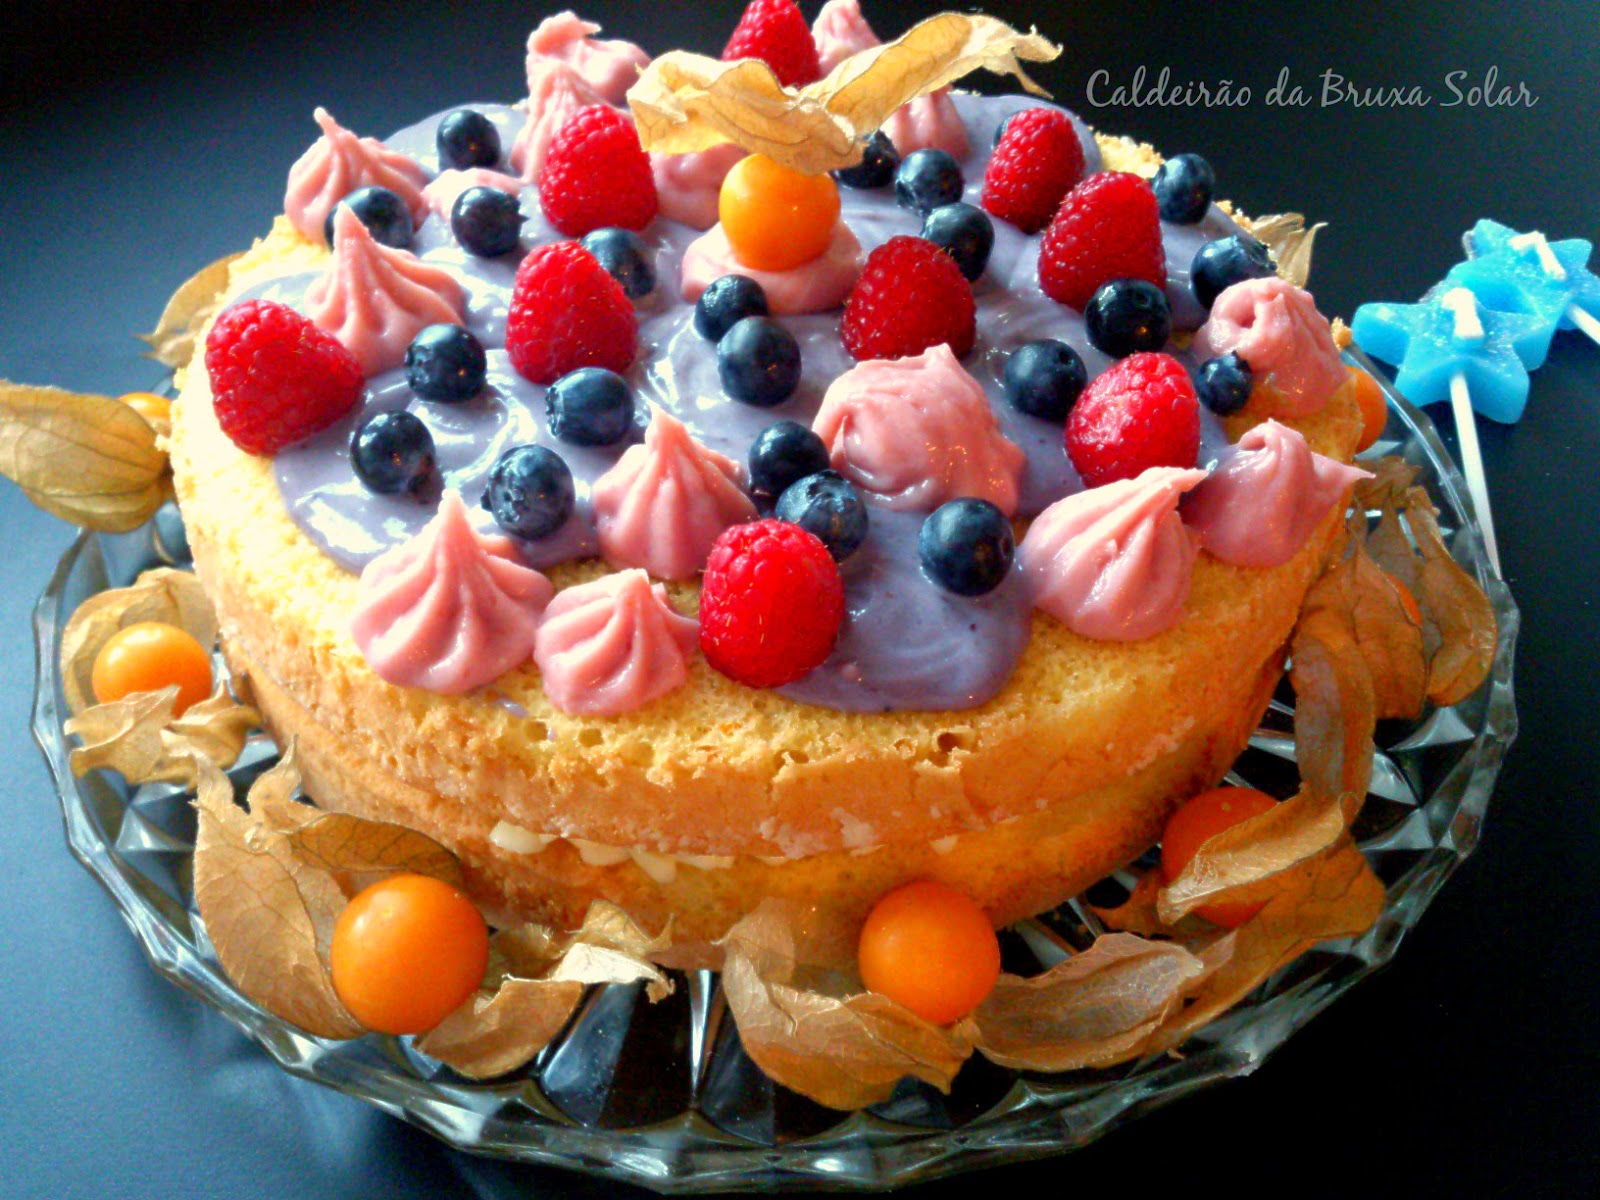 Naked Cake de laranja com ganache de frutas diversas